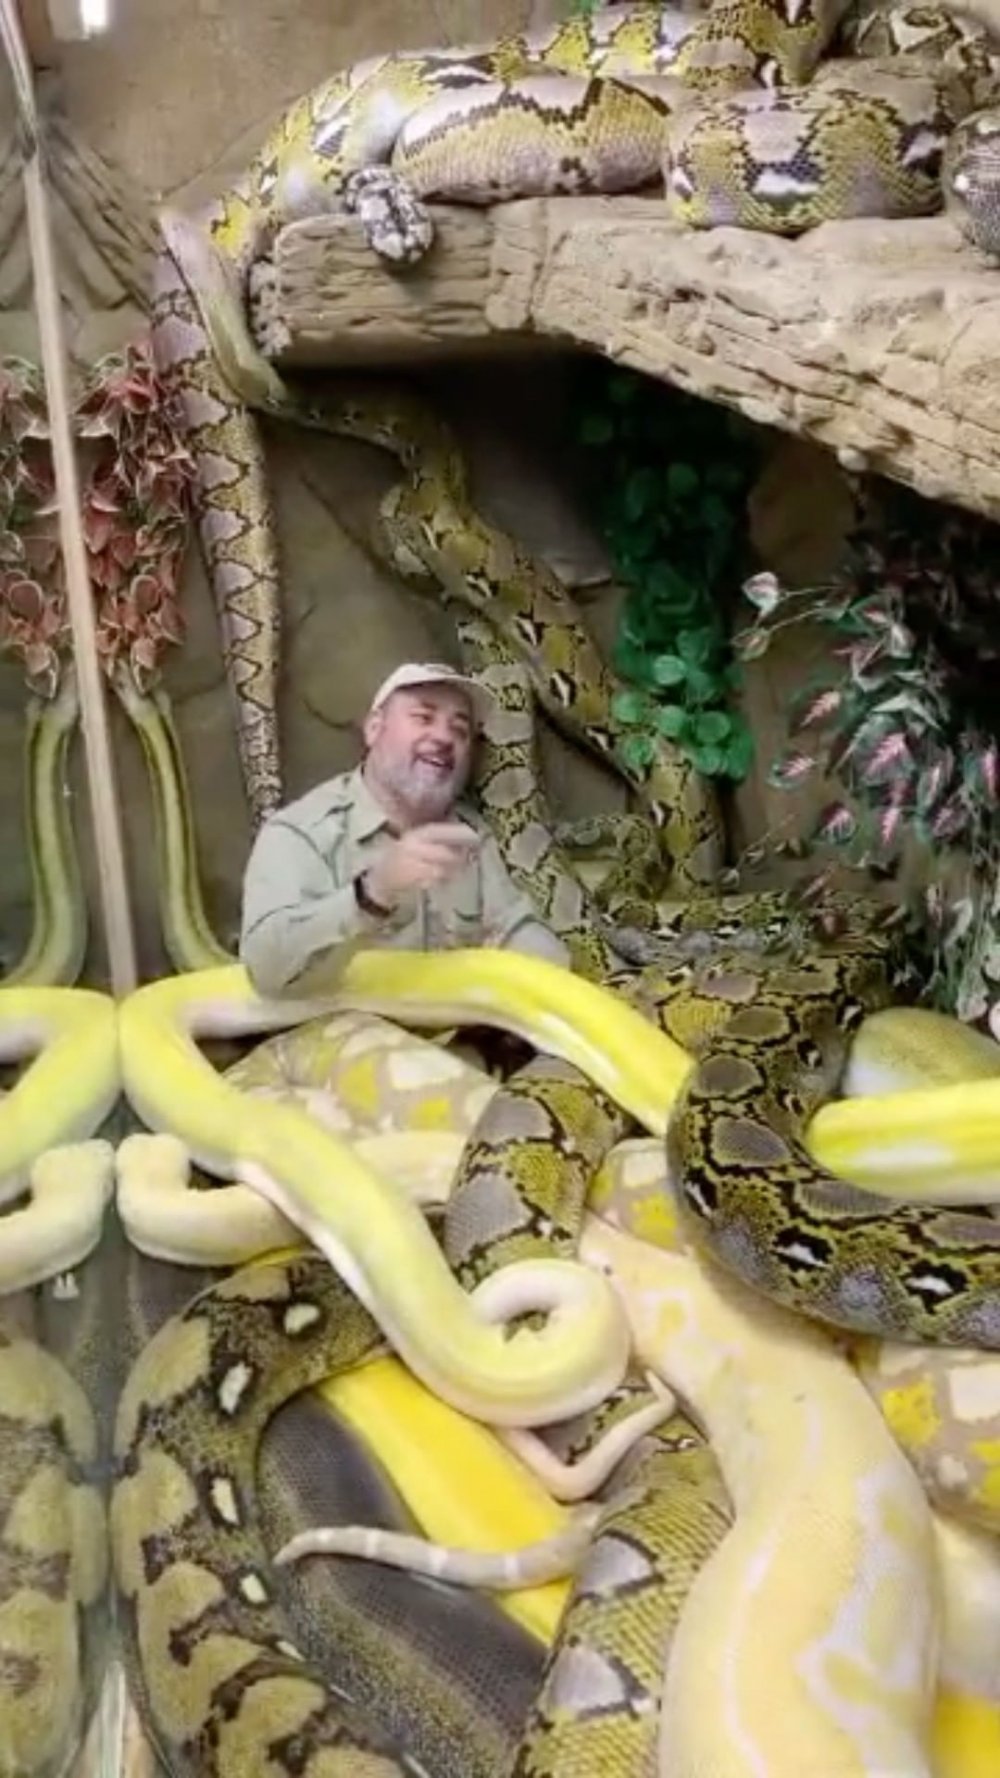 Человек боящийся змей. Бассейн со змеями.